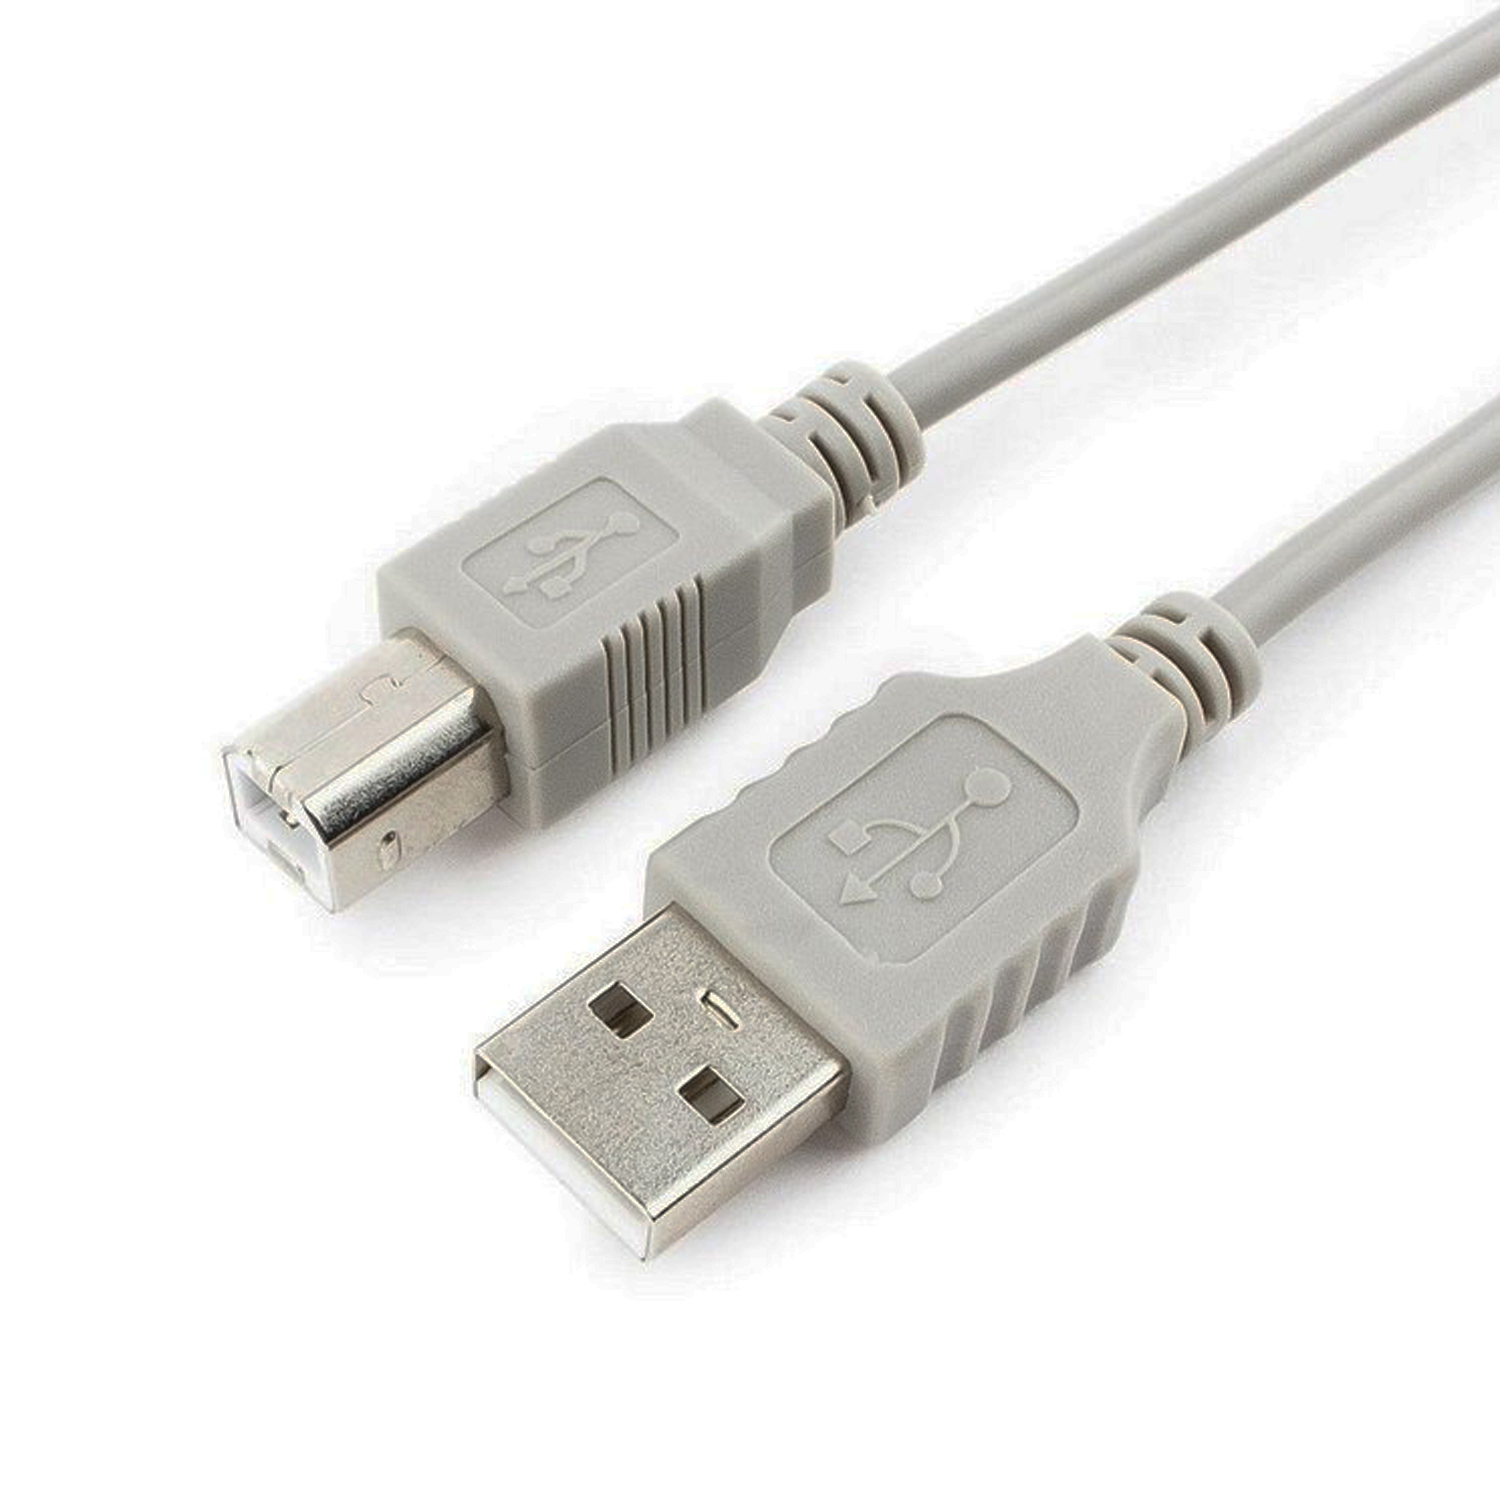 Шнур USB AM-BM 1.8 м. серый (для принтера, сканера), фото